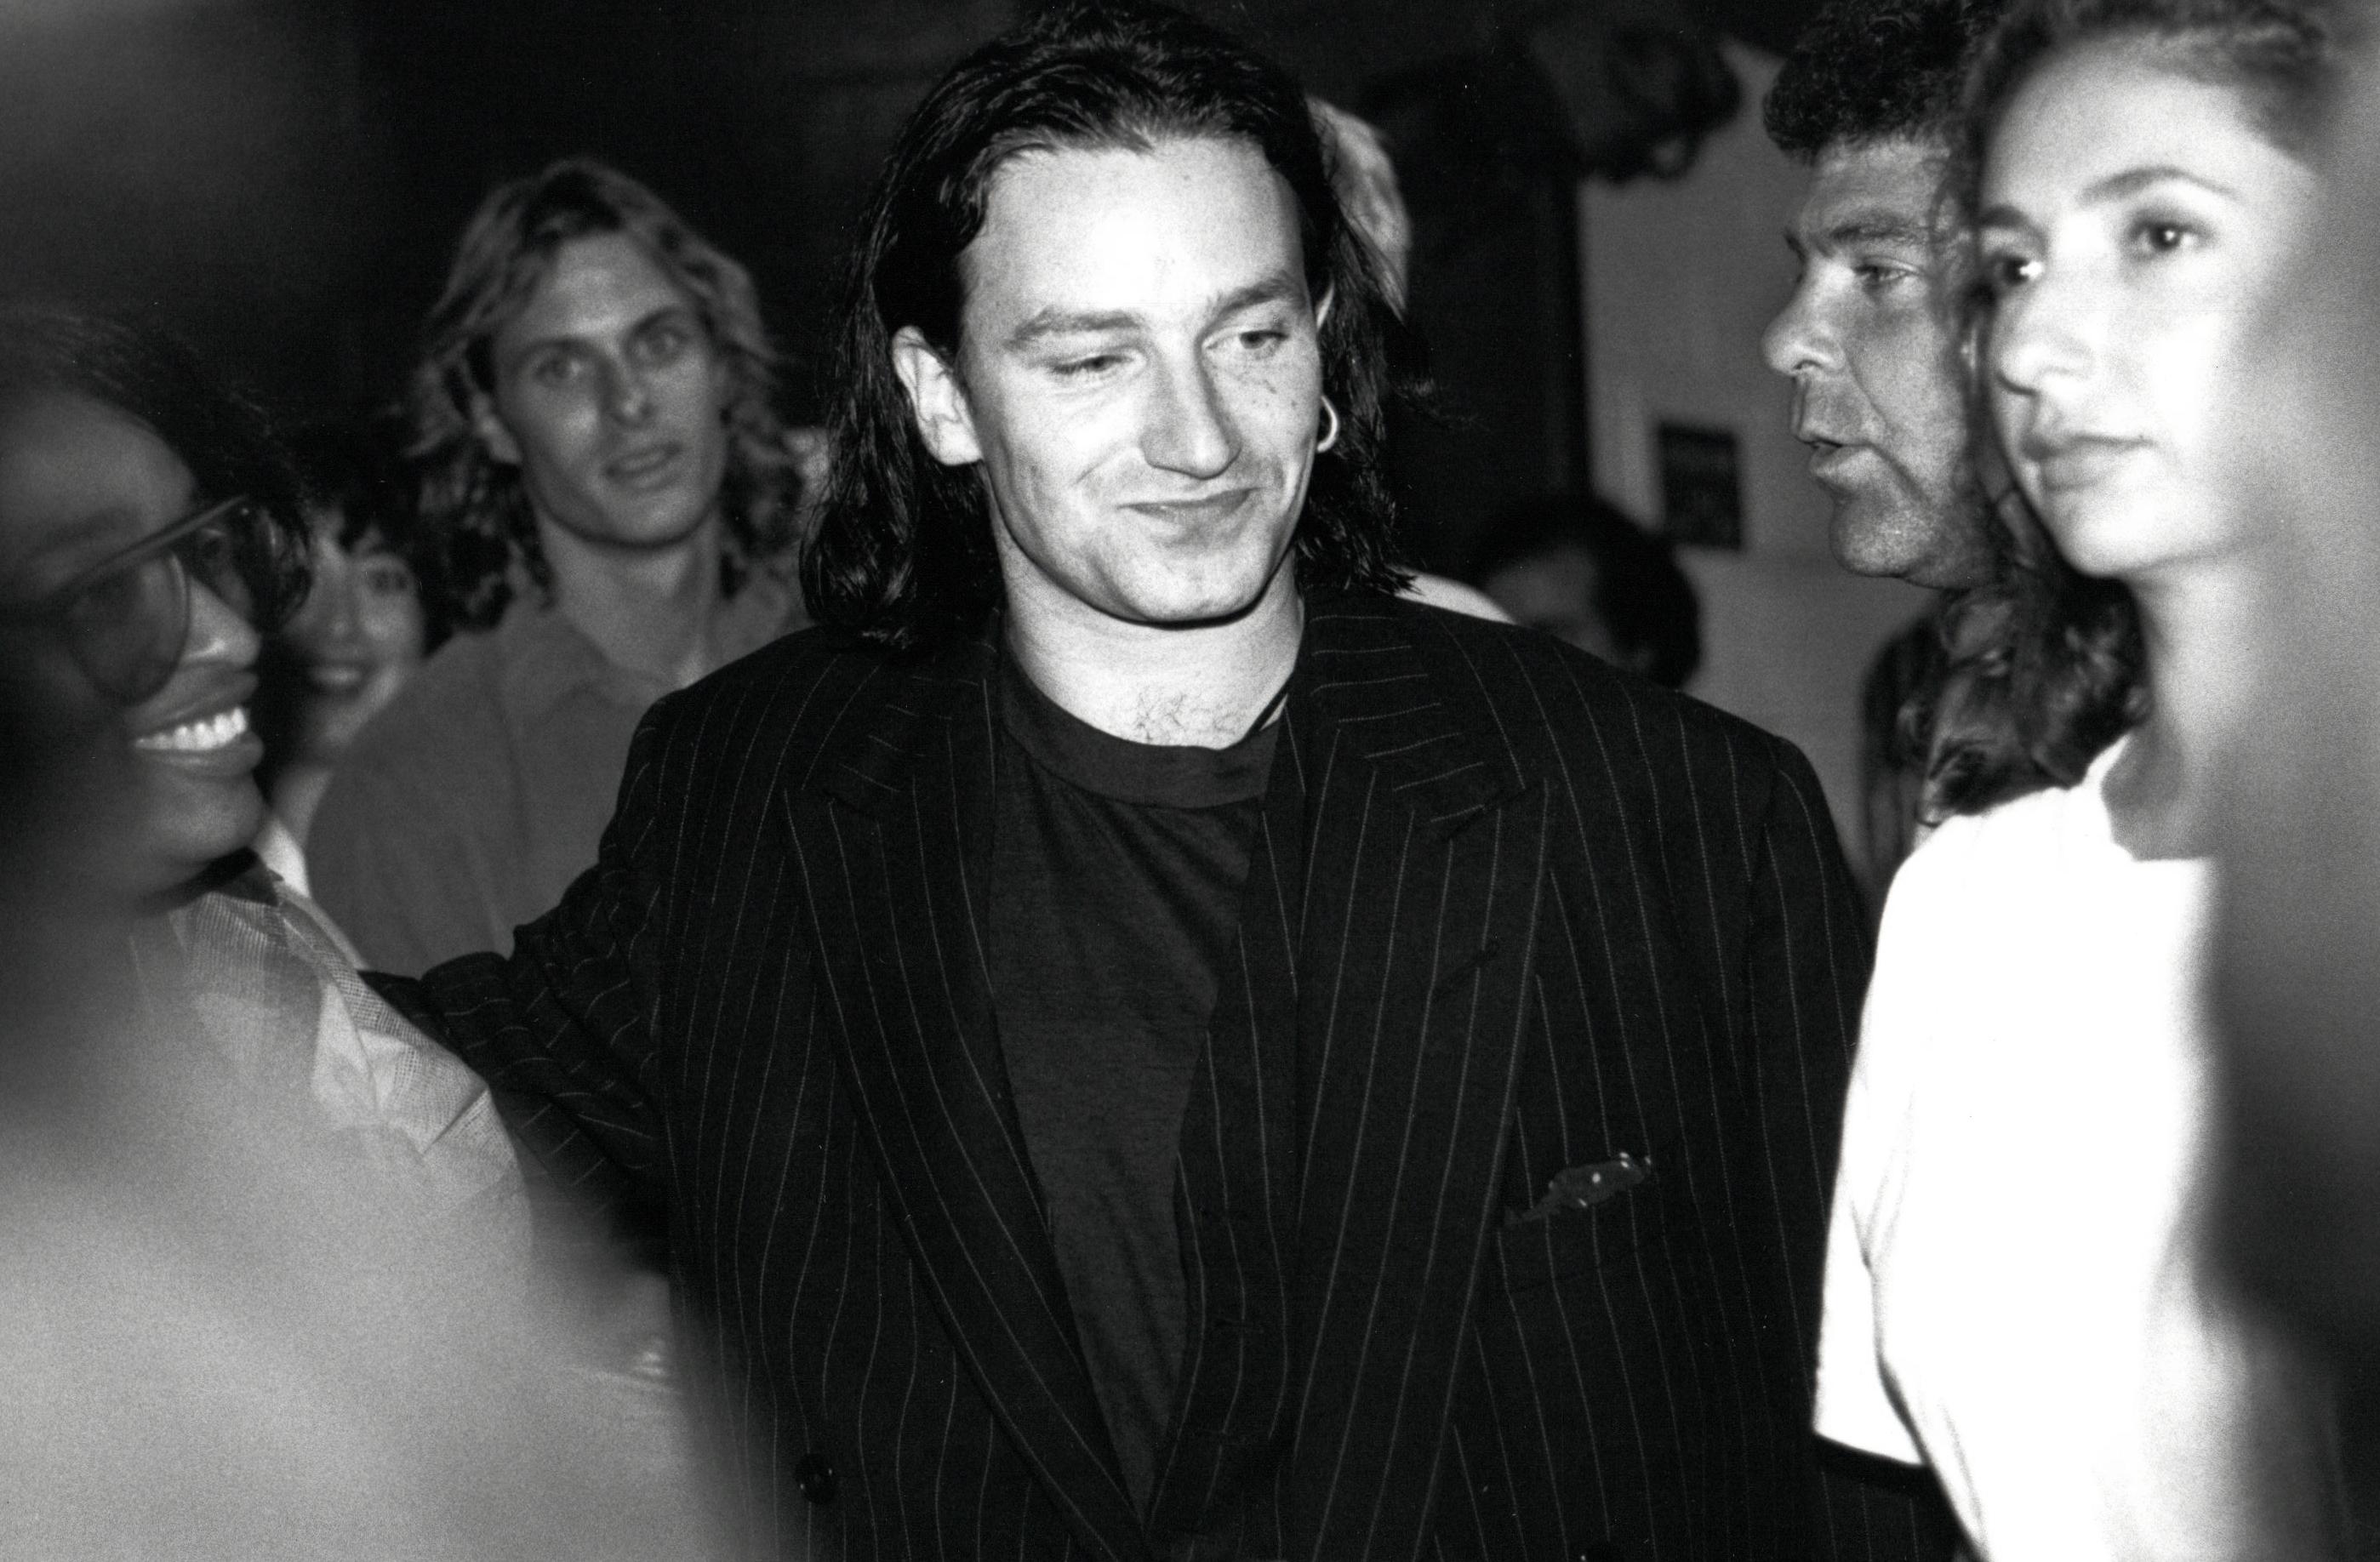 Jim Lowney Portrait Photograph - Bono of U2 Candid Backstage Vintage Original Photograph